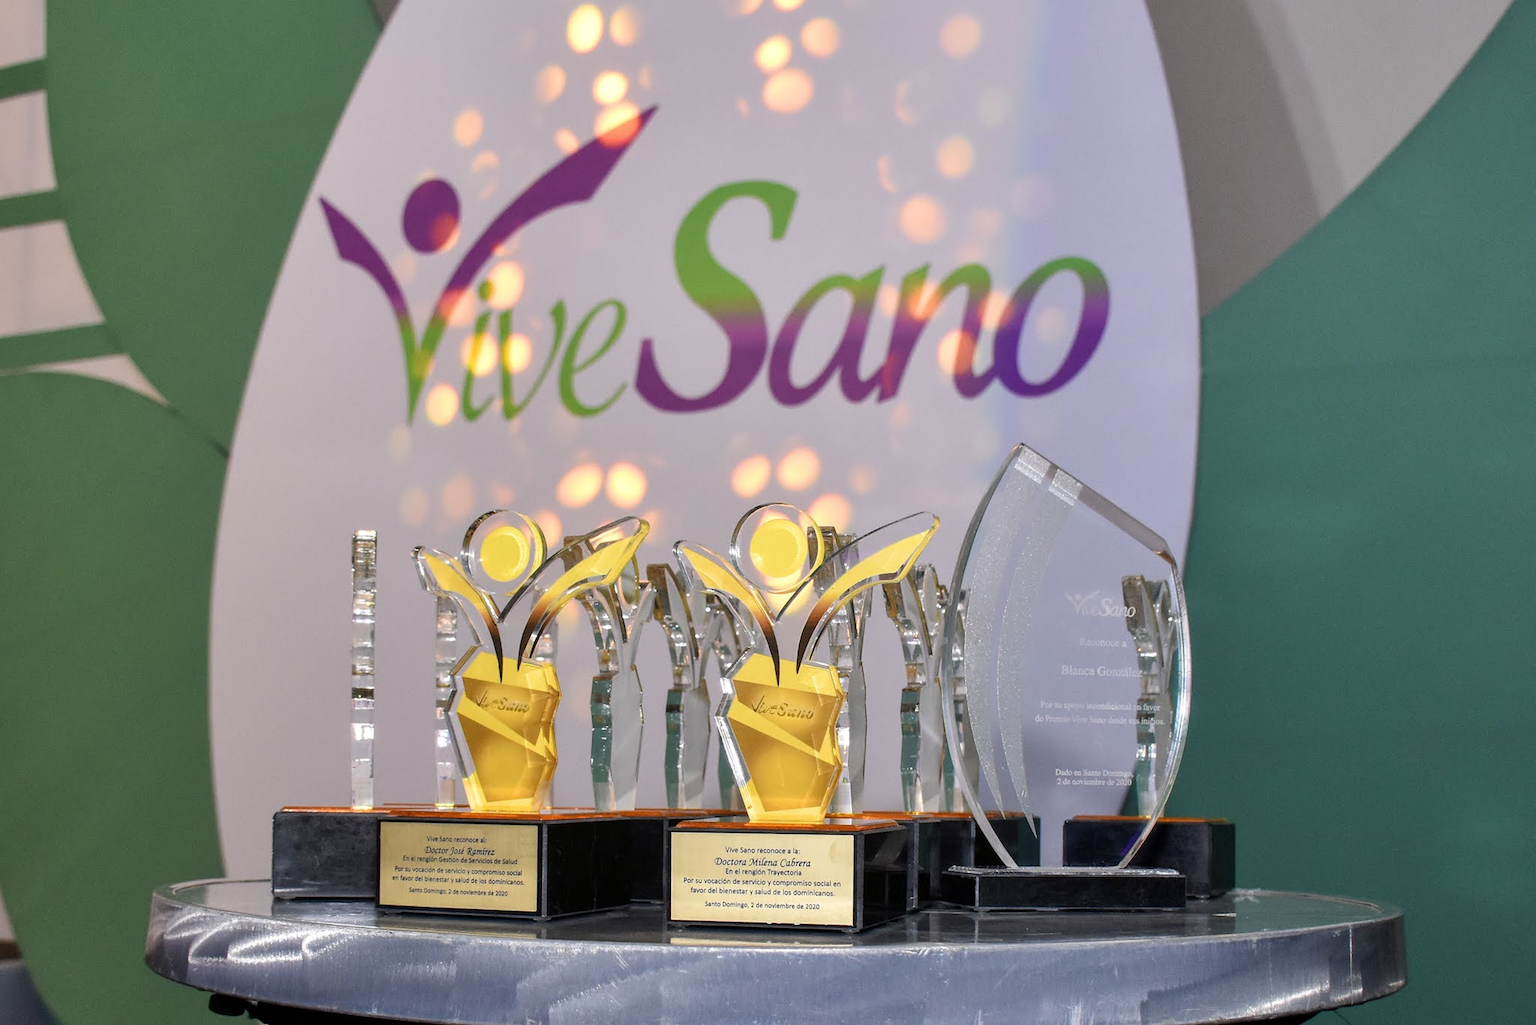 Premio Vive Sano anuncia su Quinta Gala